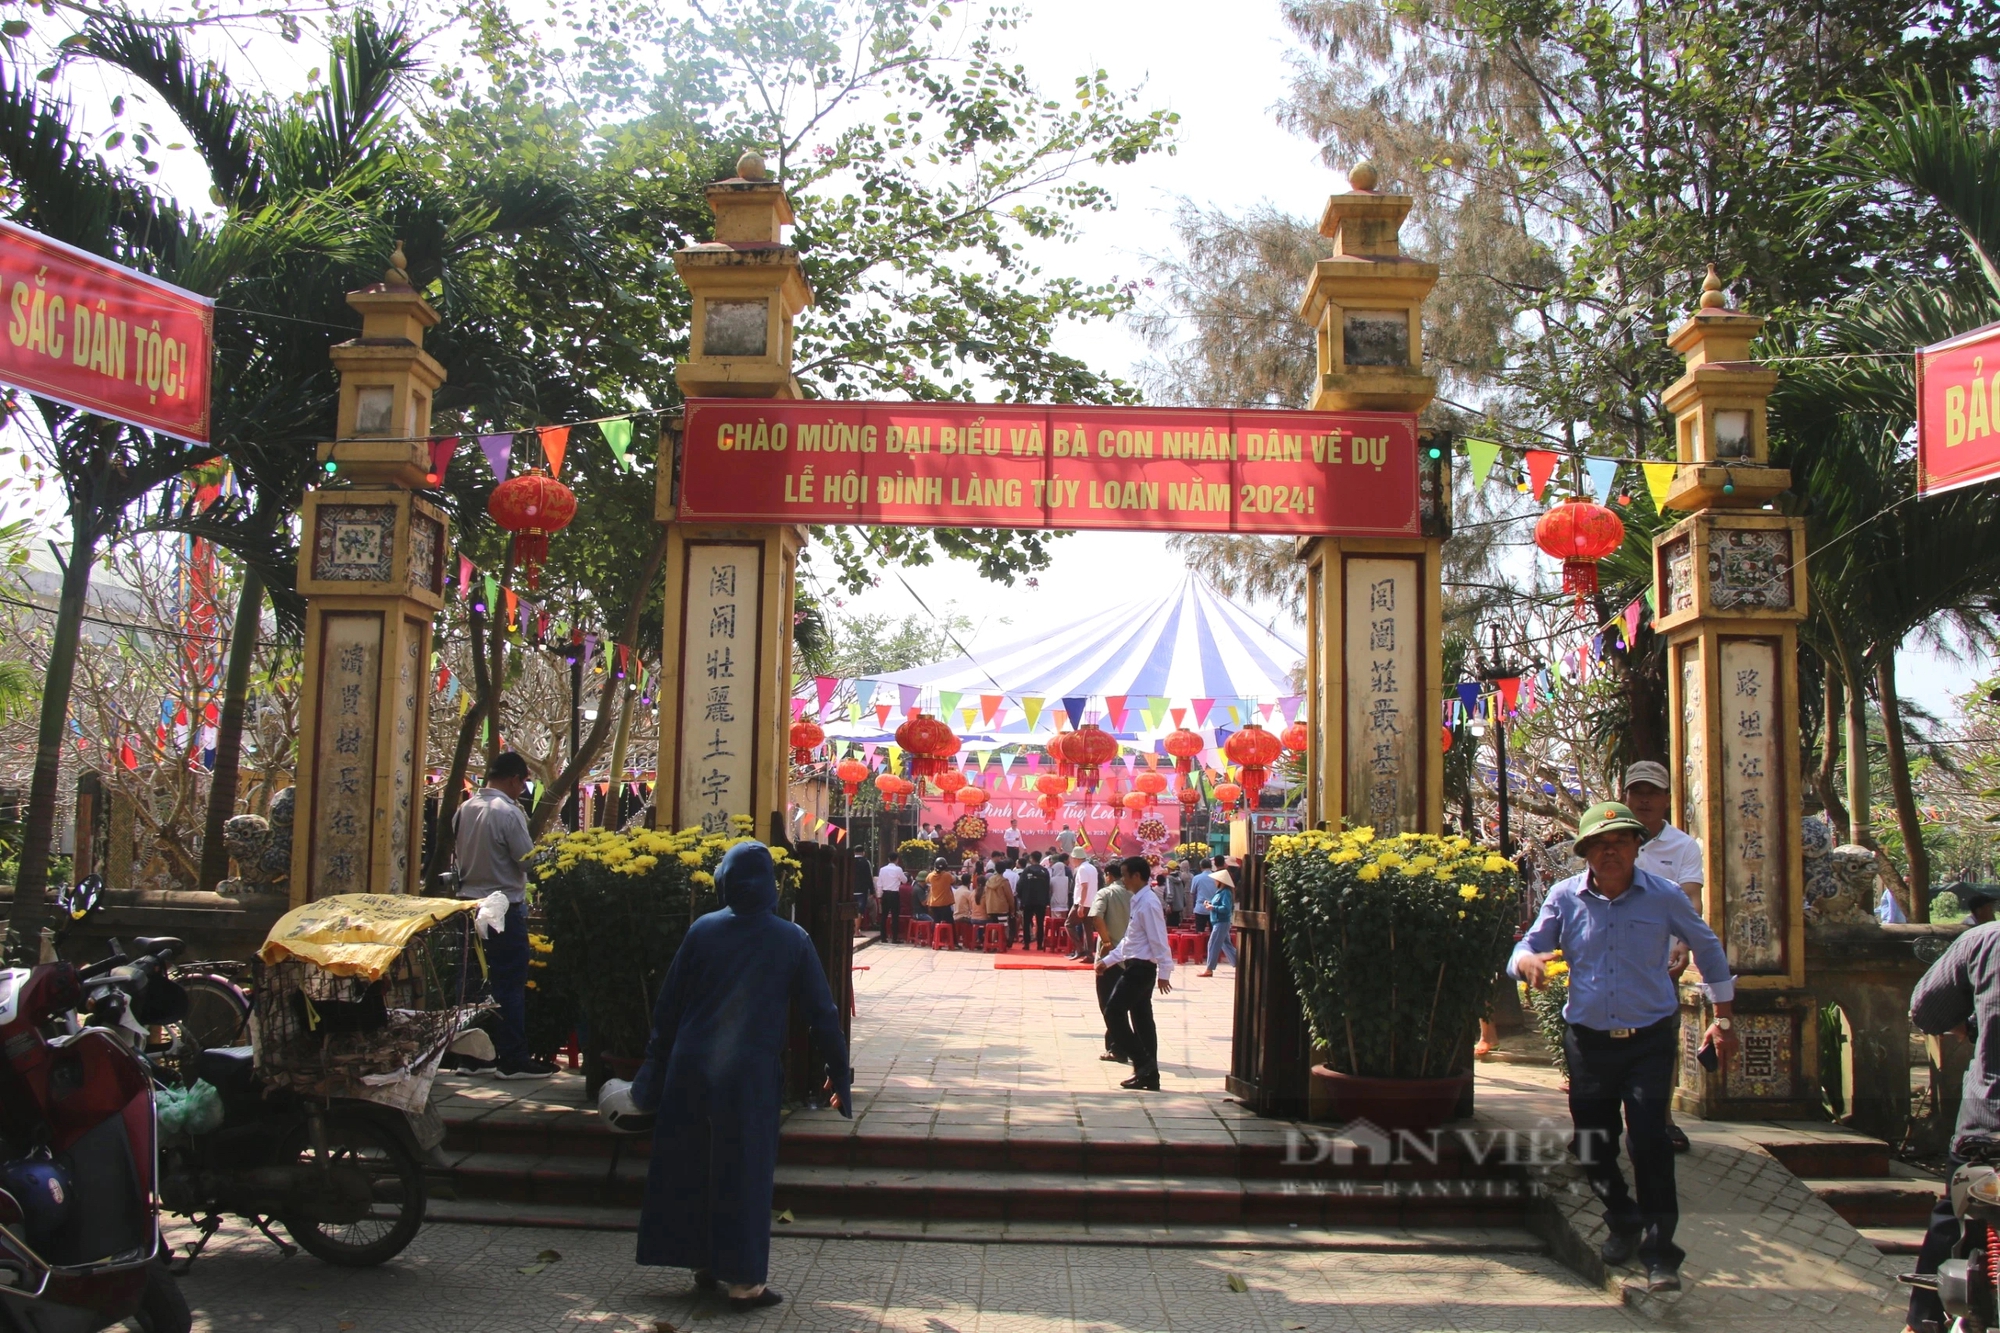 Tranh đua quyết liệt tại lễ hội đua thuyền nơi làng cổ 500 tuổi ở Đà Nẵng- Ảnh 10.